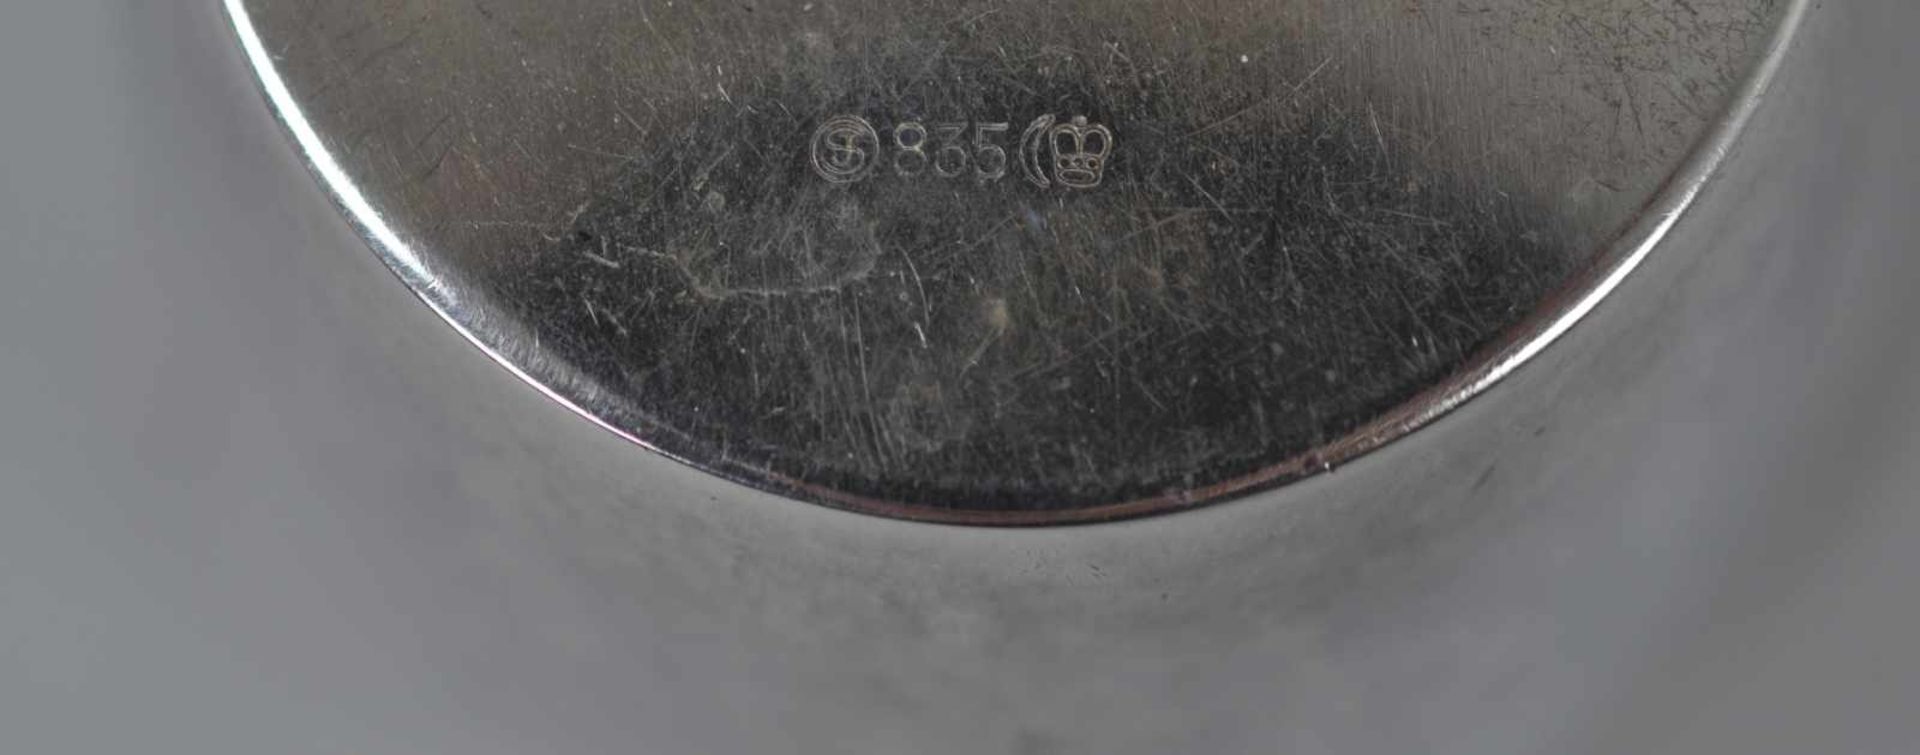 6 BECHER gemarkt Kern u. "JS", Silber 835, H 9cm, 564gr - Image 2 of 2